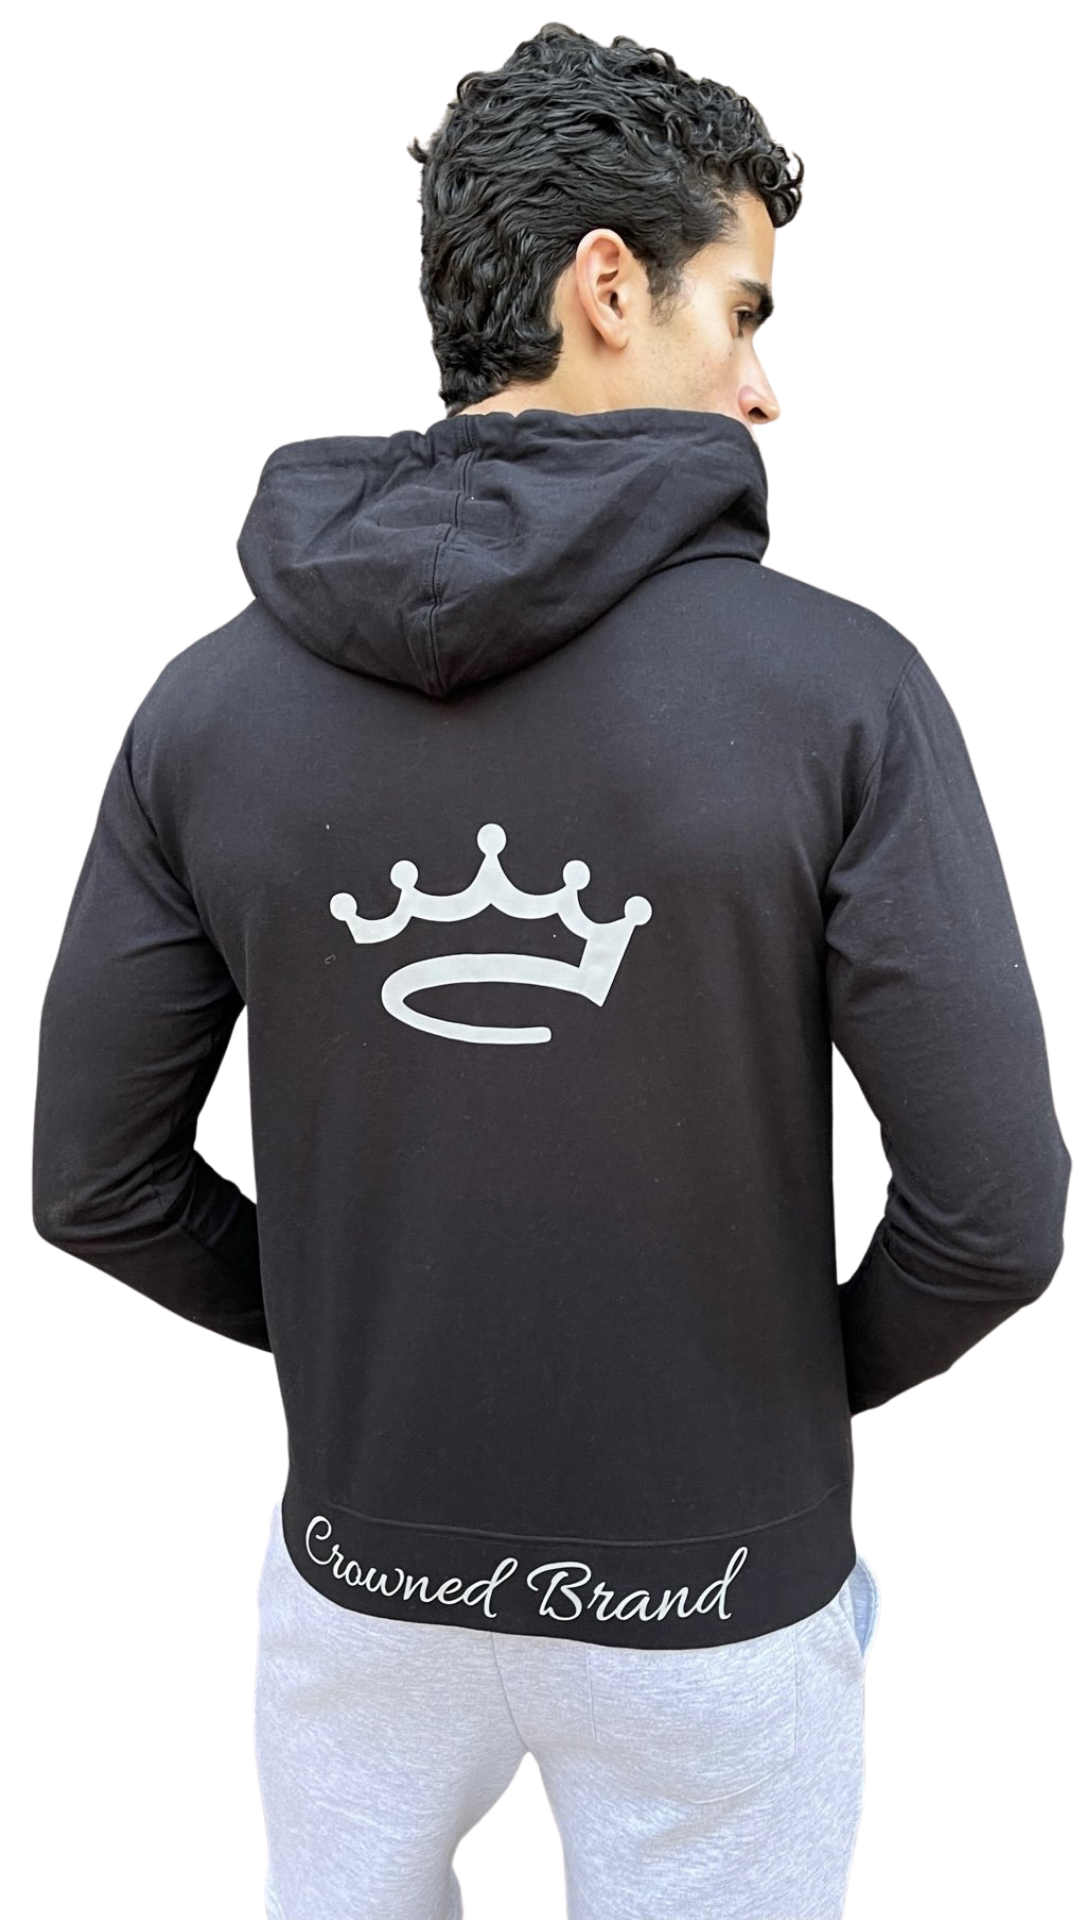 Black / Grey - Crowned Brand ™